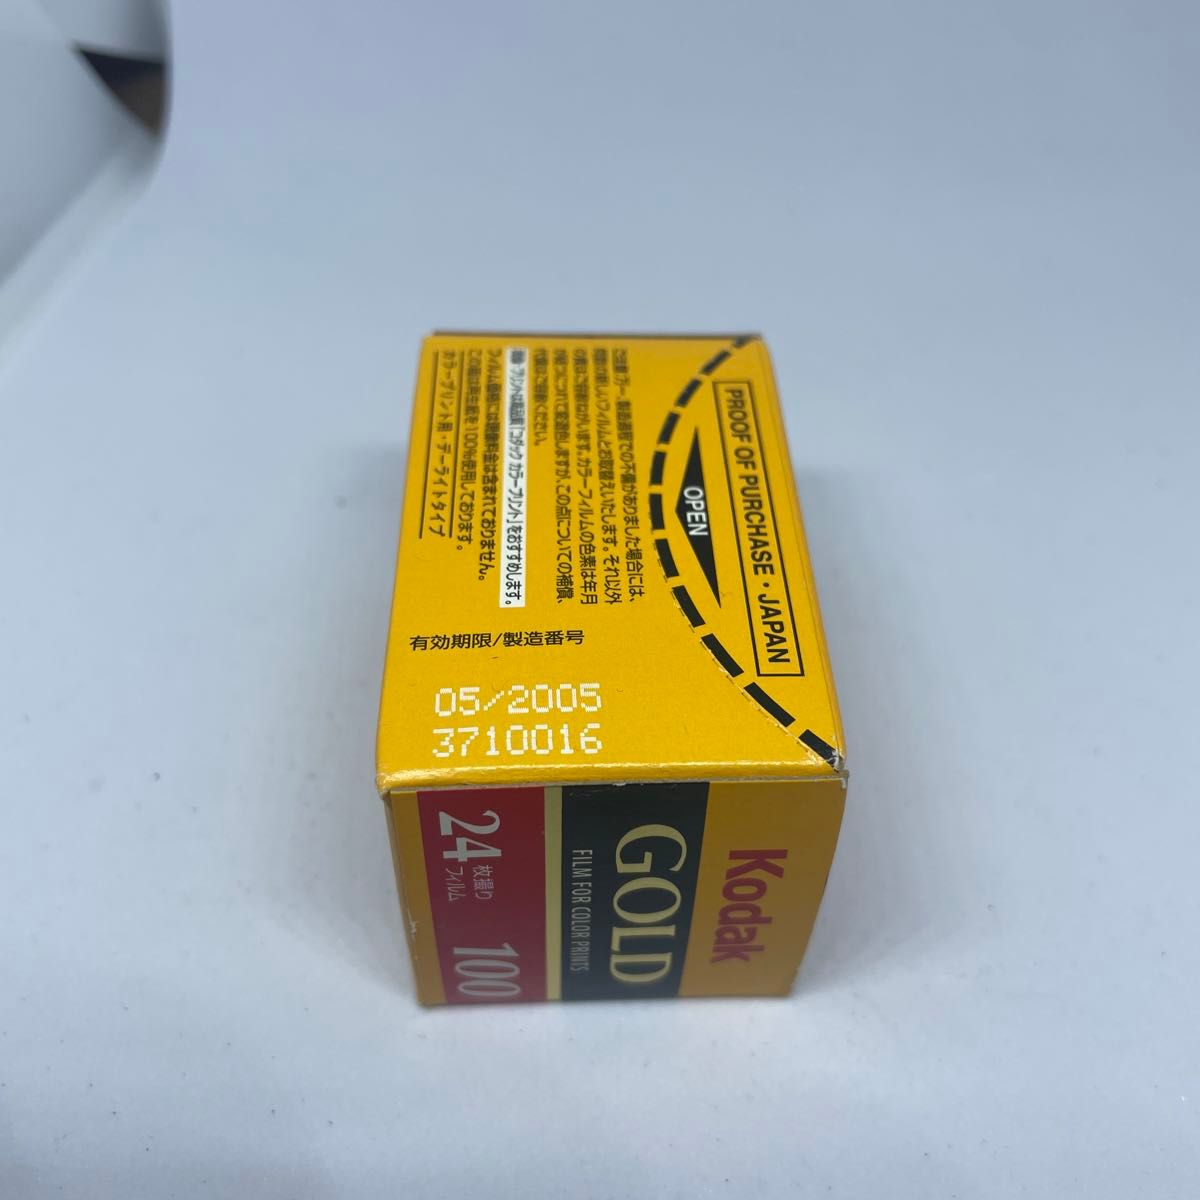 Kodak gold 100 24枚撮り 135 35mmフィルム ライカ判 カラーフィルム 2005/05期限切れ